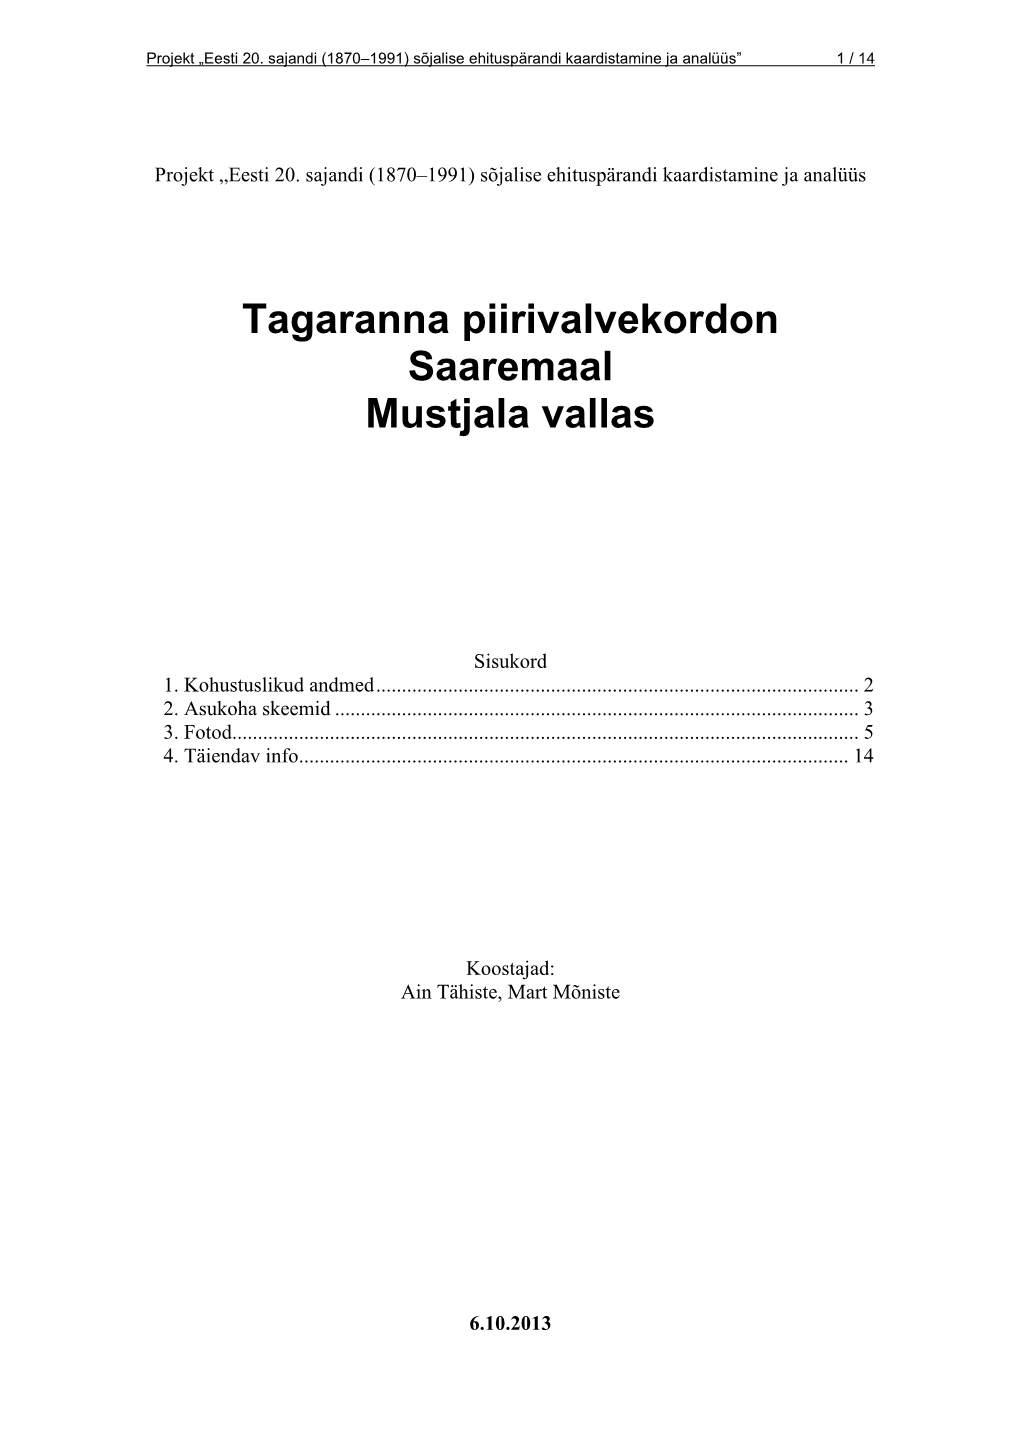 Tagaranna Piirivalvekordon Saaremaal Mustjala Vallas